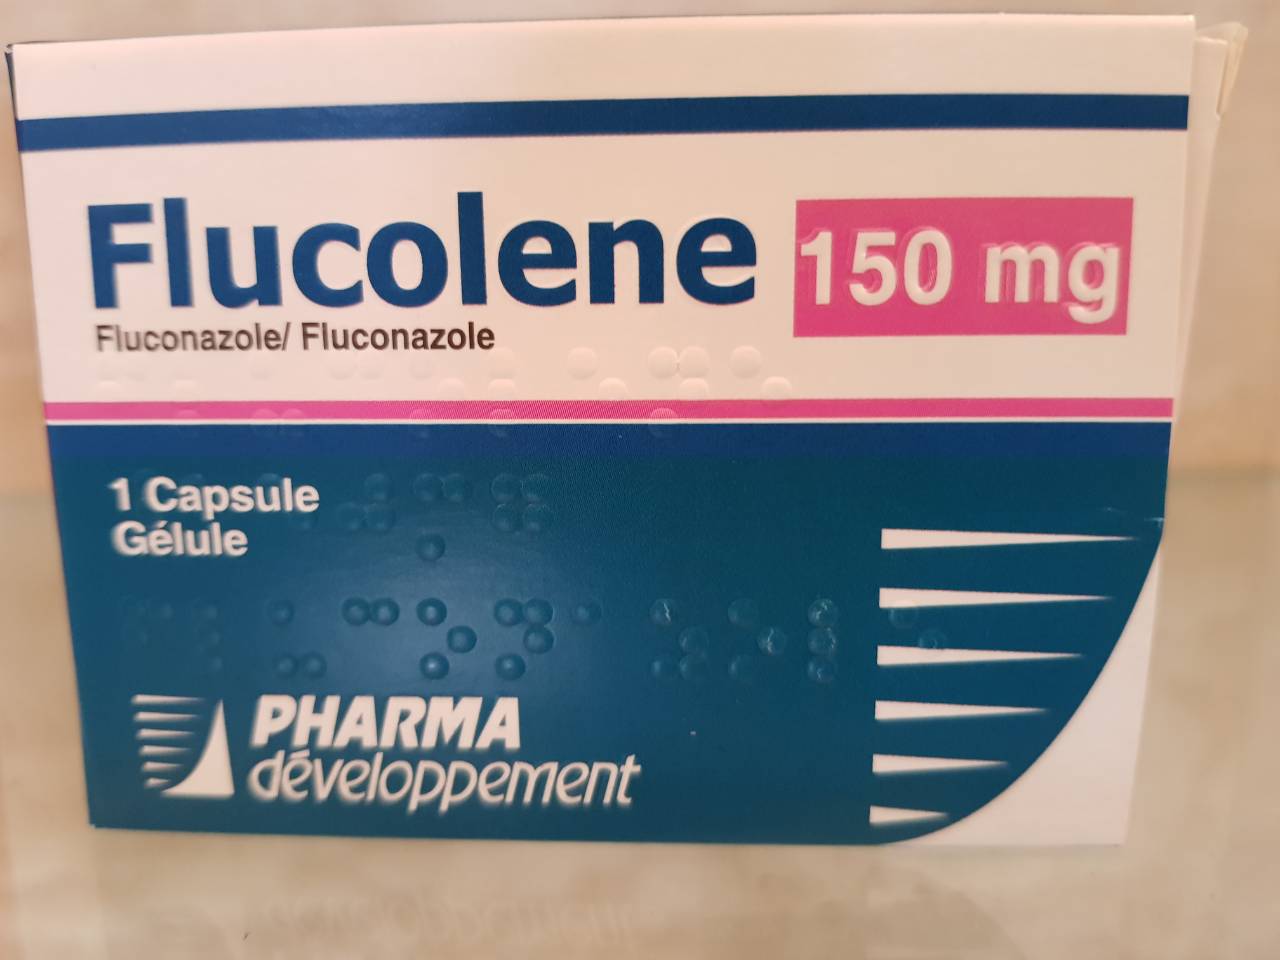 Flucolene 200 mg